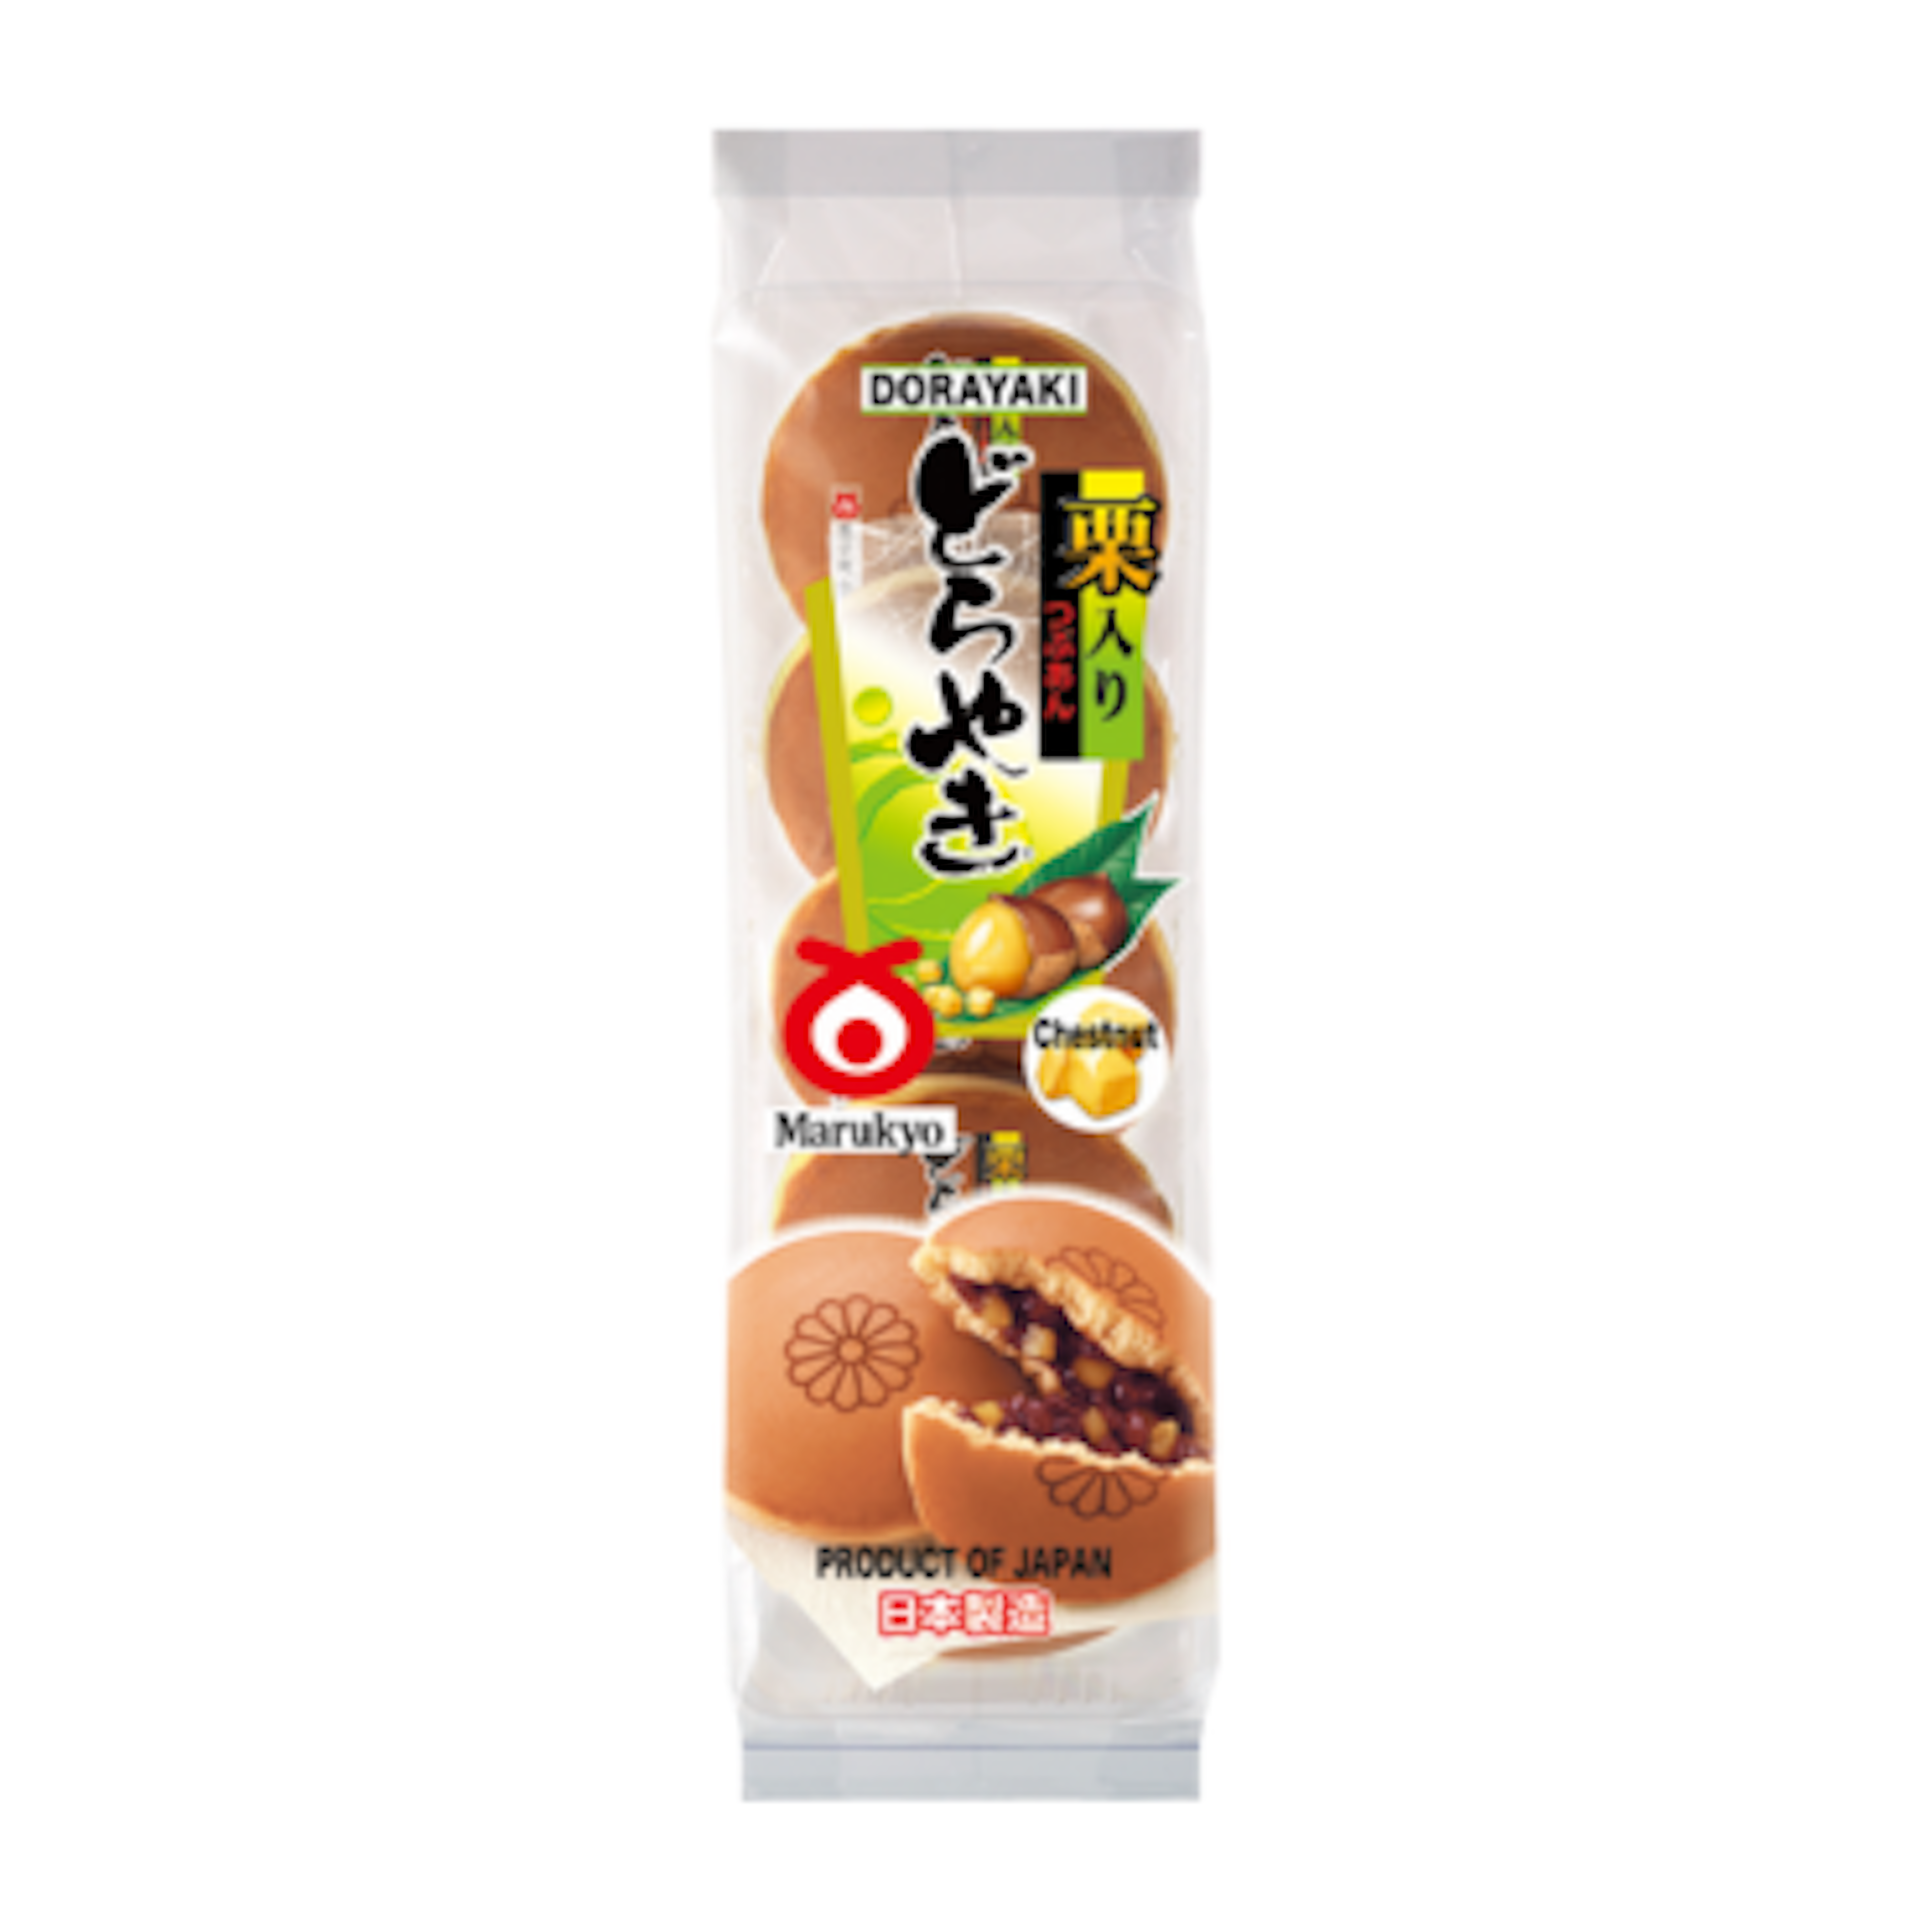 Süßer Marukyo Chestnut Dorayaki – eine köstliche japanische Leckerei für jeden Anlass!